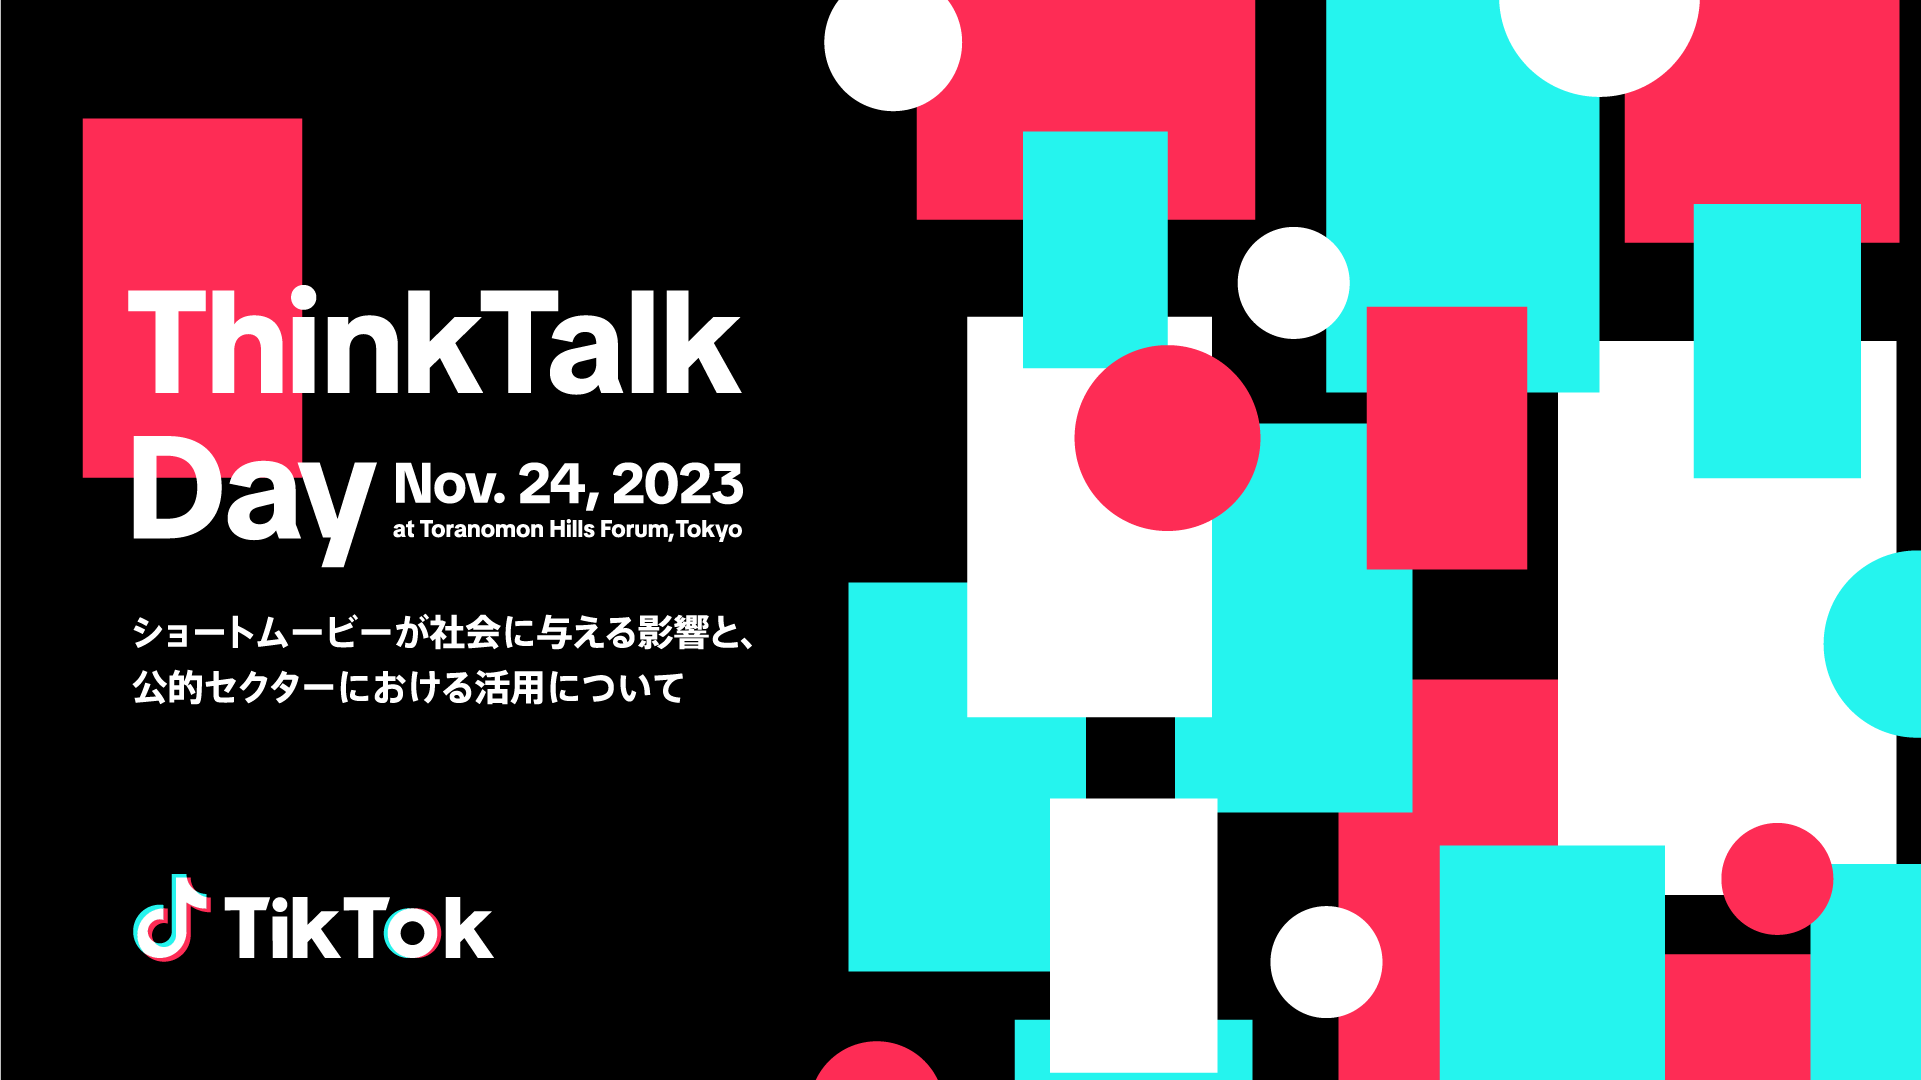 スターミュージック・エンタテインメント取締役COO 中村雄太が、TikTok Japan主催のシンポジウム「ThinkTalk Day 〜ショートムービーが社会に与える影響と、公的セクターにおける活用のしかた〜」に登壇